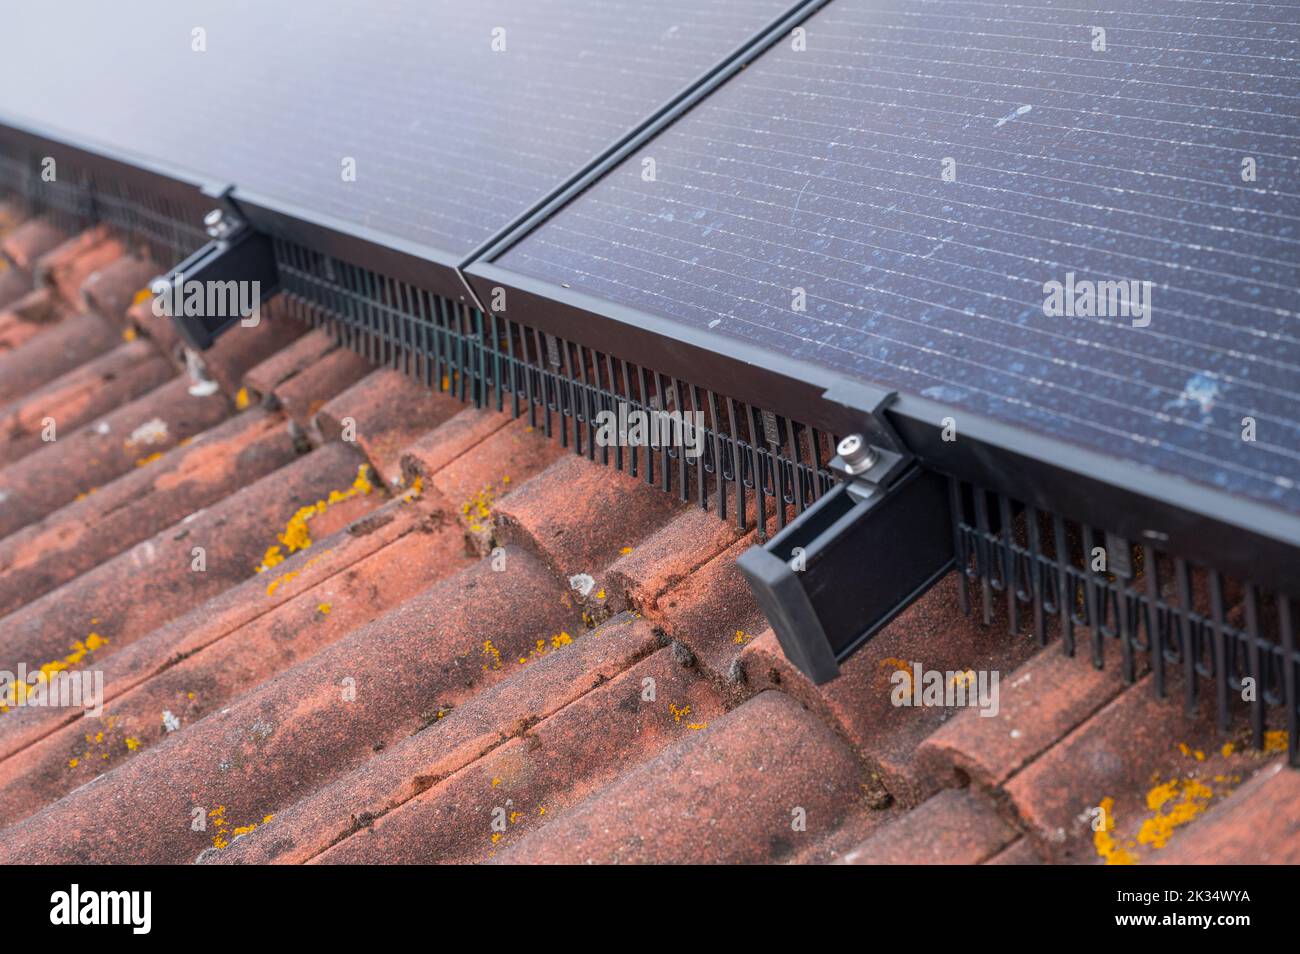 Guardas de aves alrededor del borde de los paneles solares fotovoltaicos en el techo de una casa en el Reino Unido Foto de stock